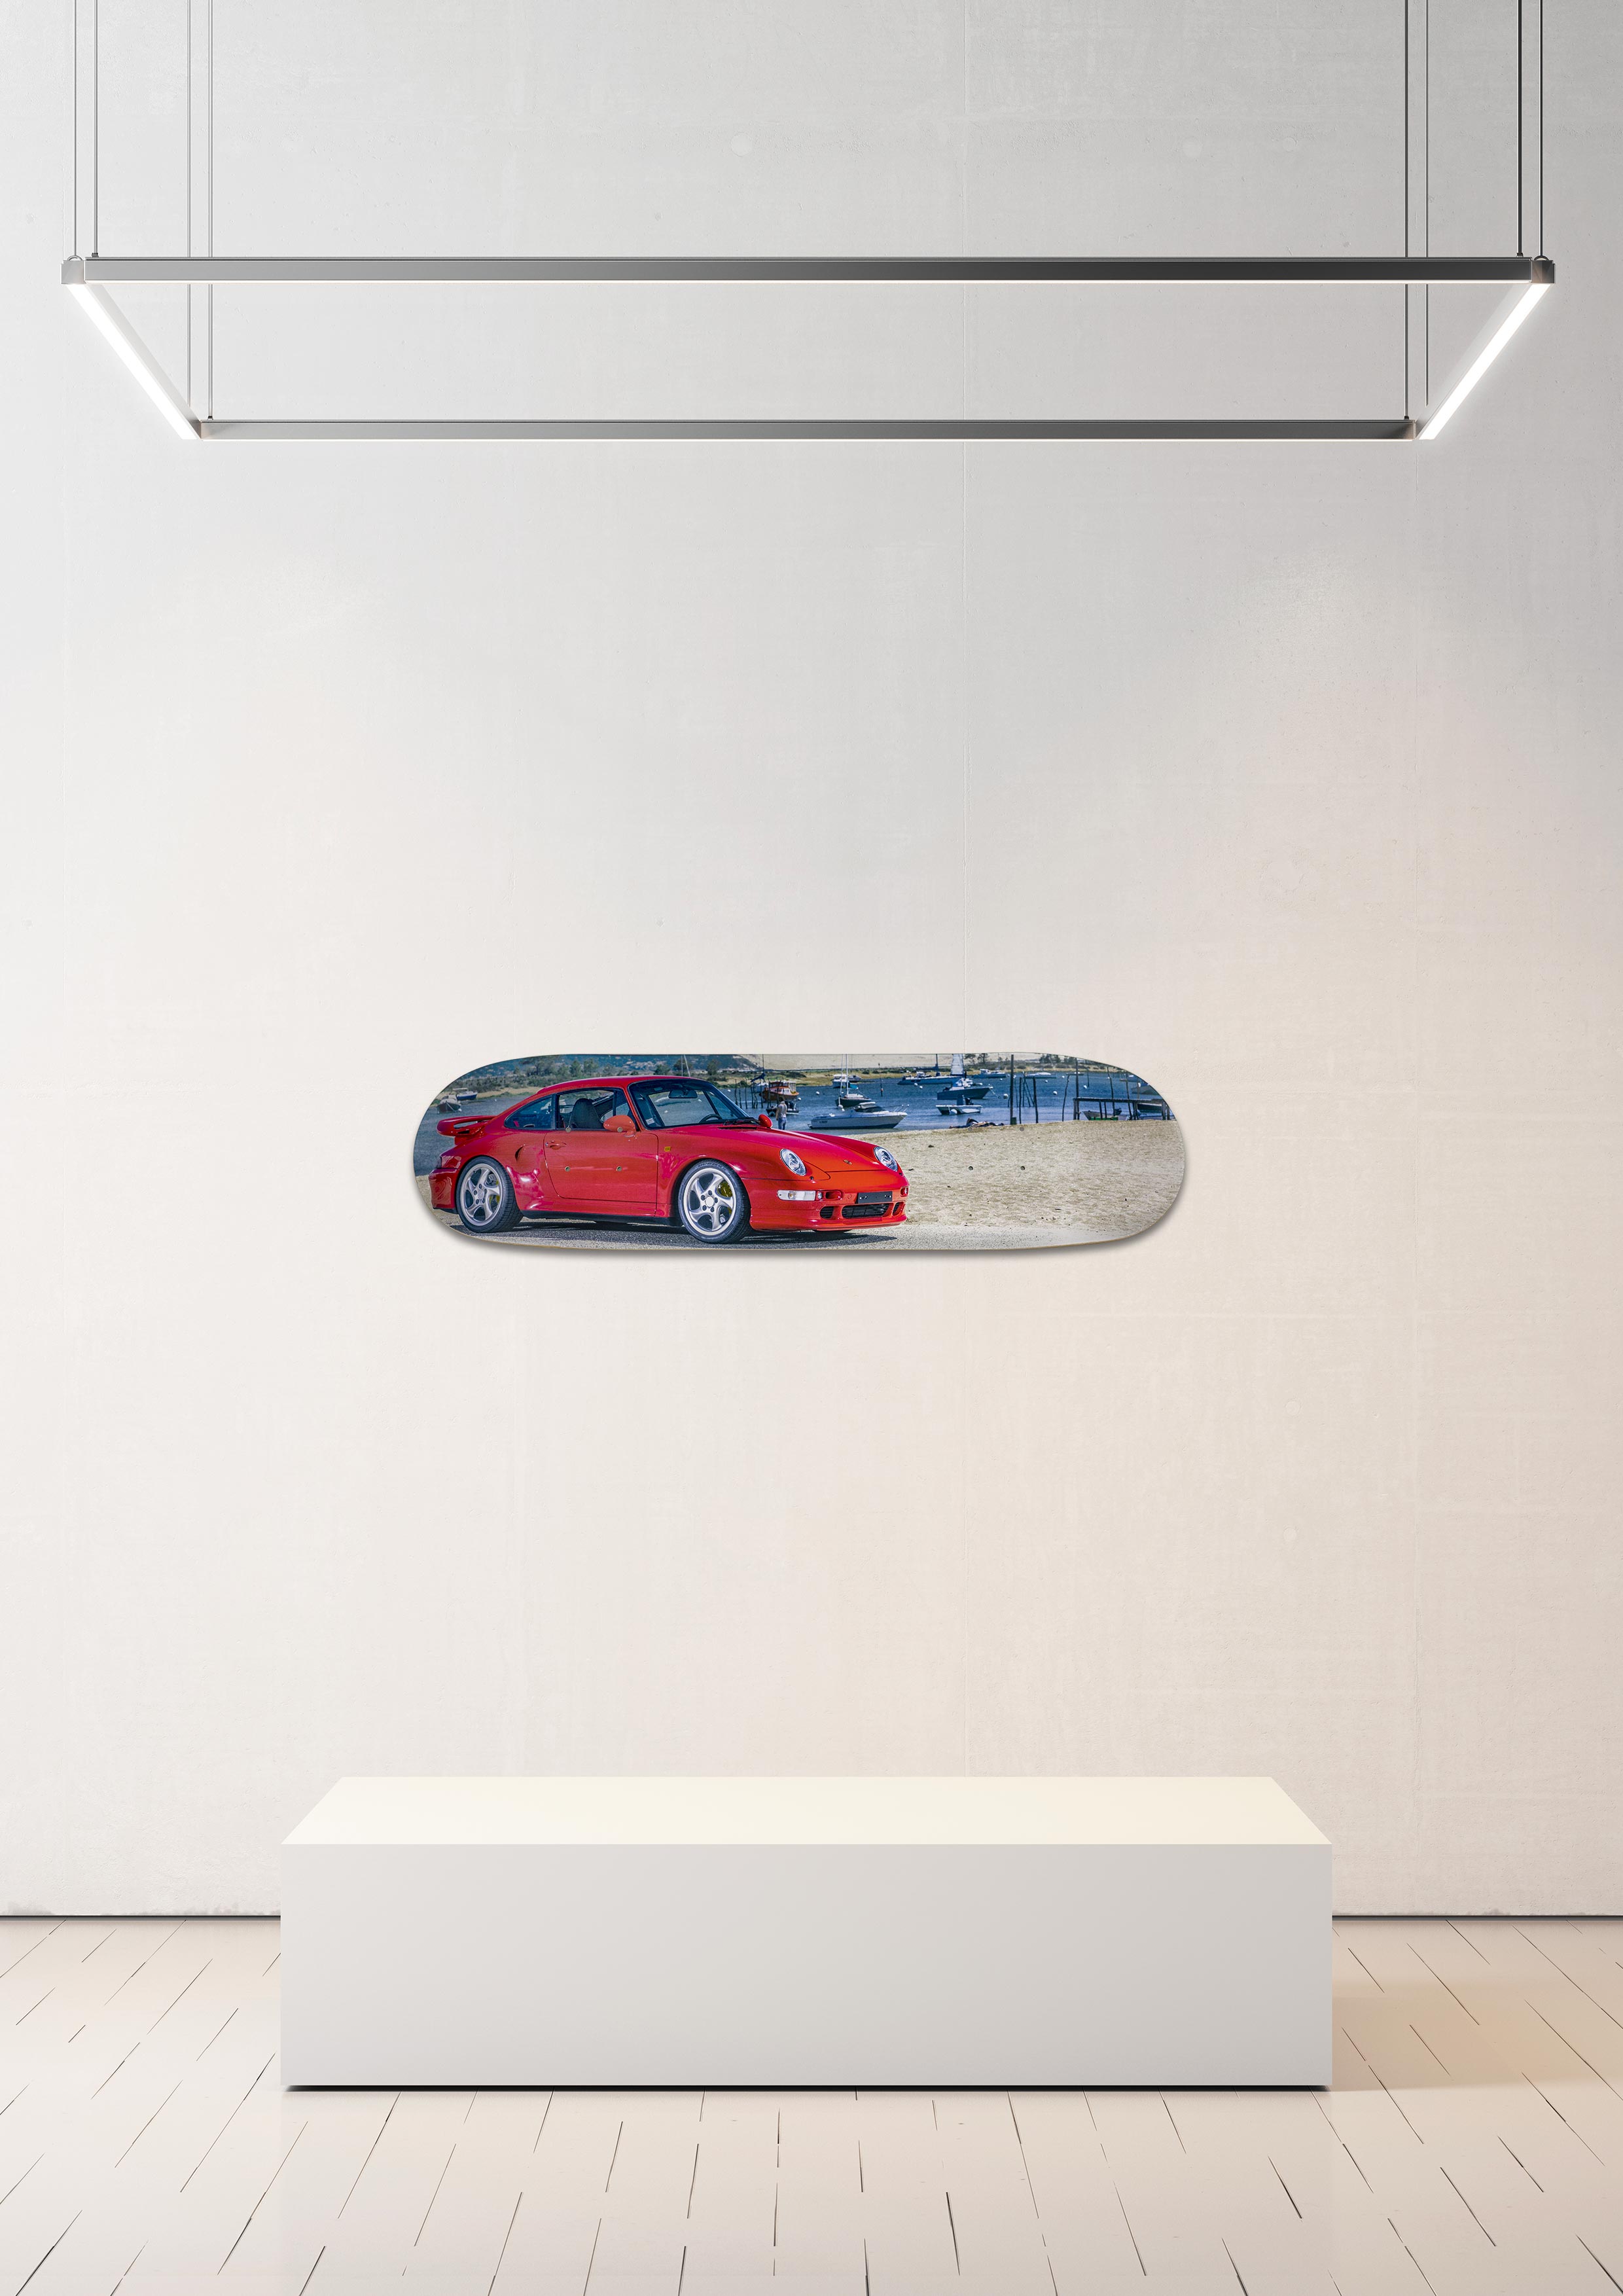 Planche de skate murale - édition très limitée Porsche 993 Turbo S - Serge Heitz